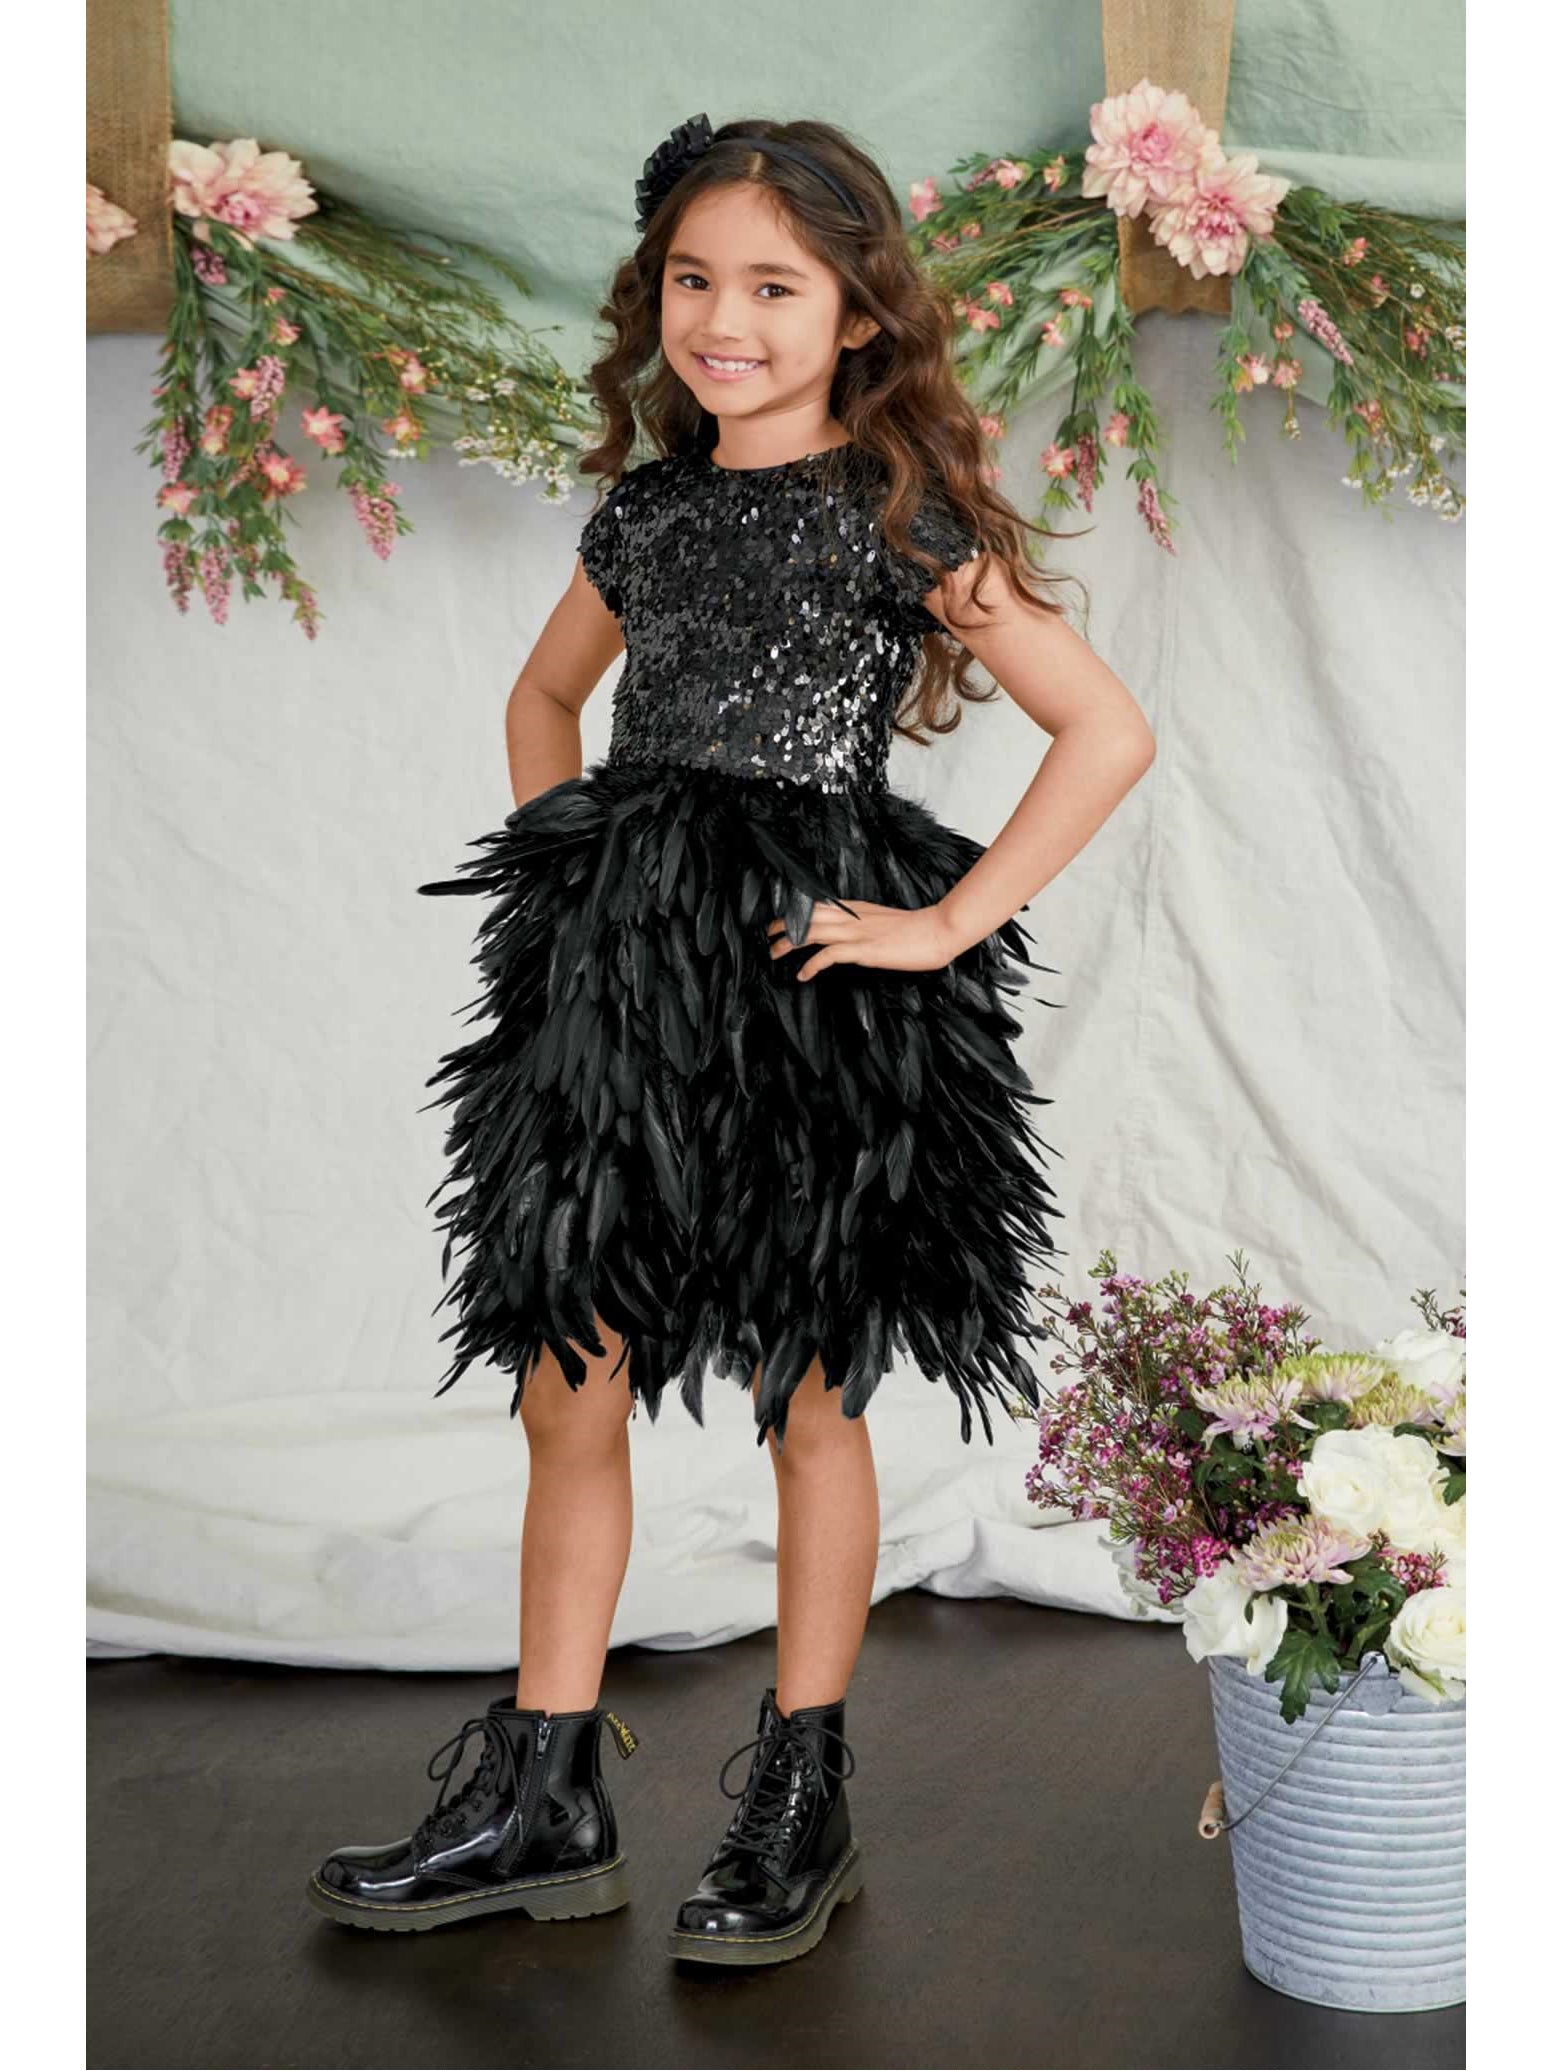 little girls sequin dress